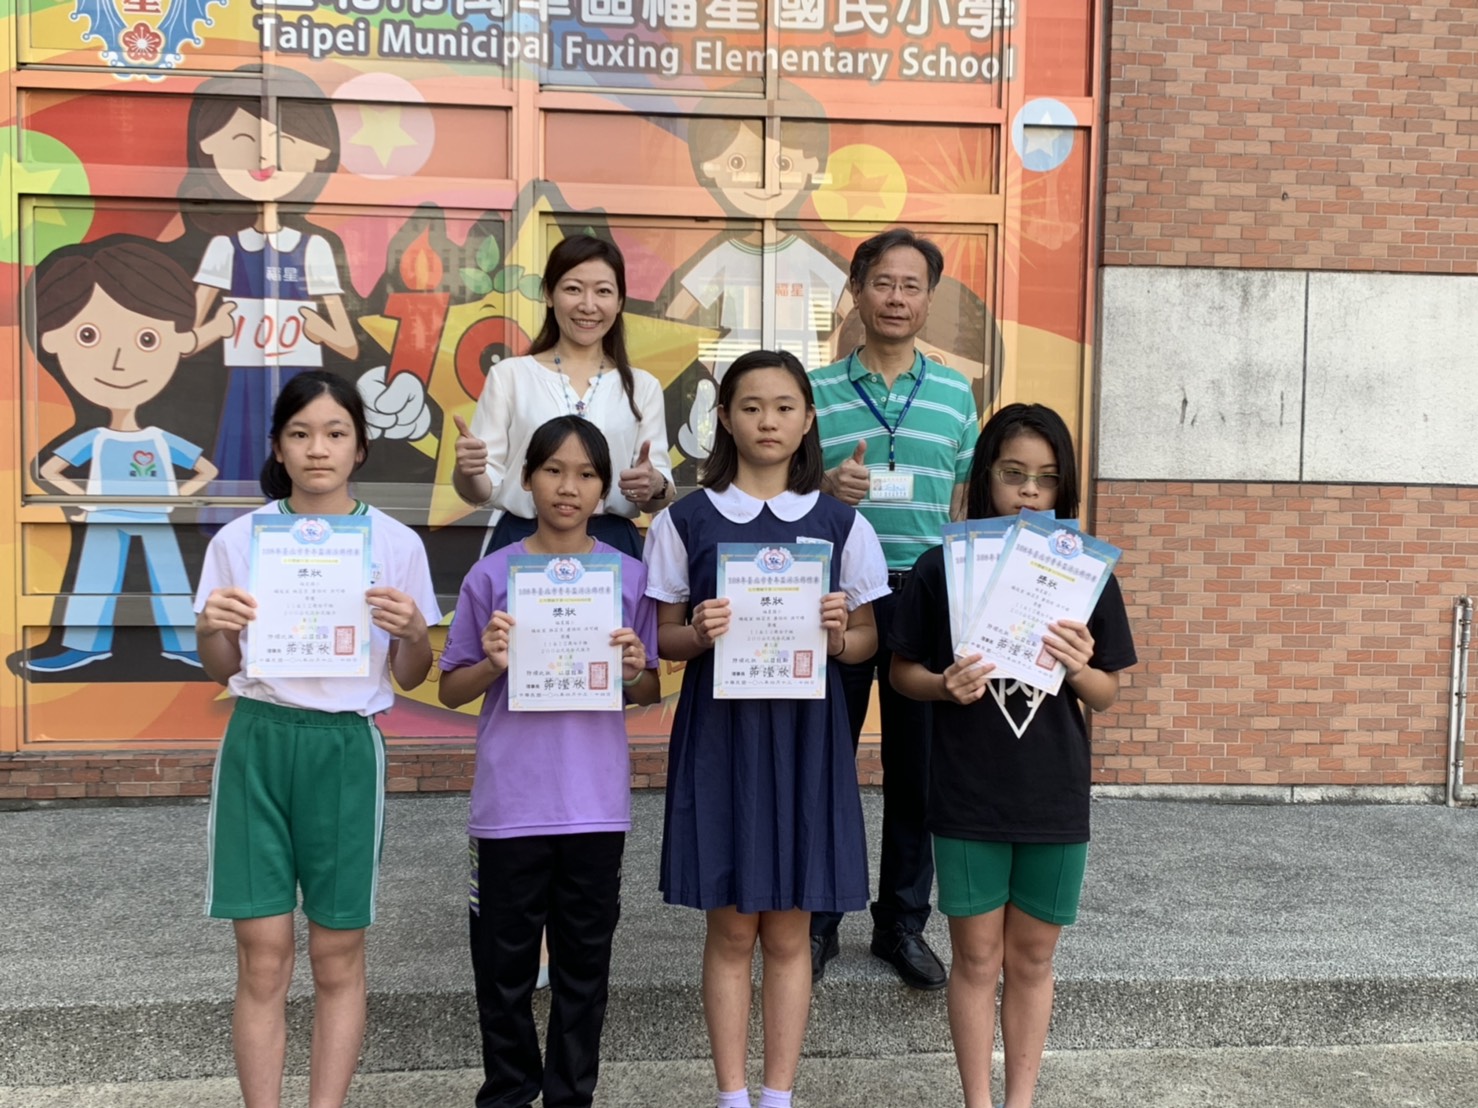 本校游泳隊參加107學年度臺北市國民小學運動會榮獲佳績